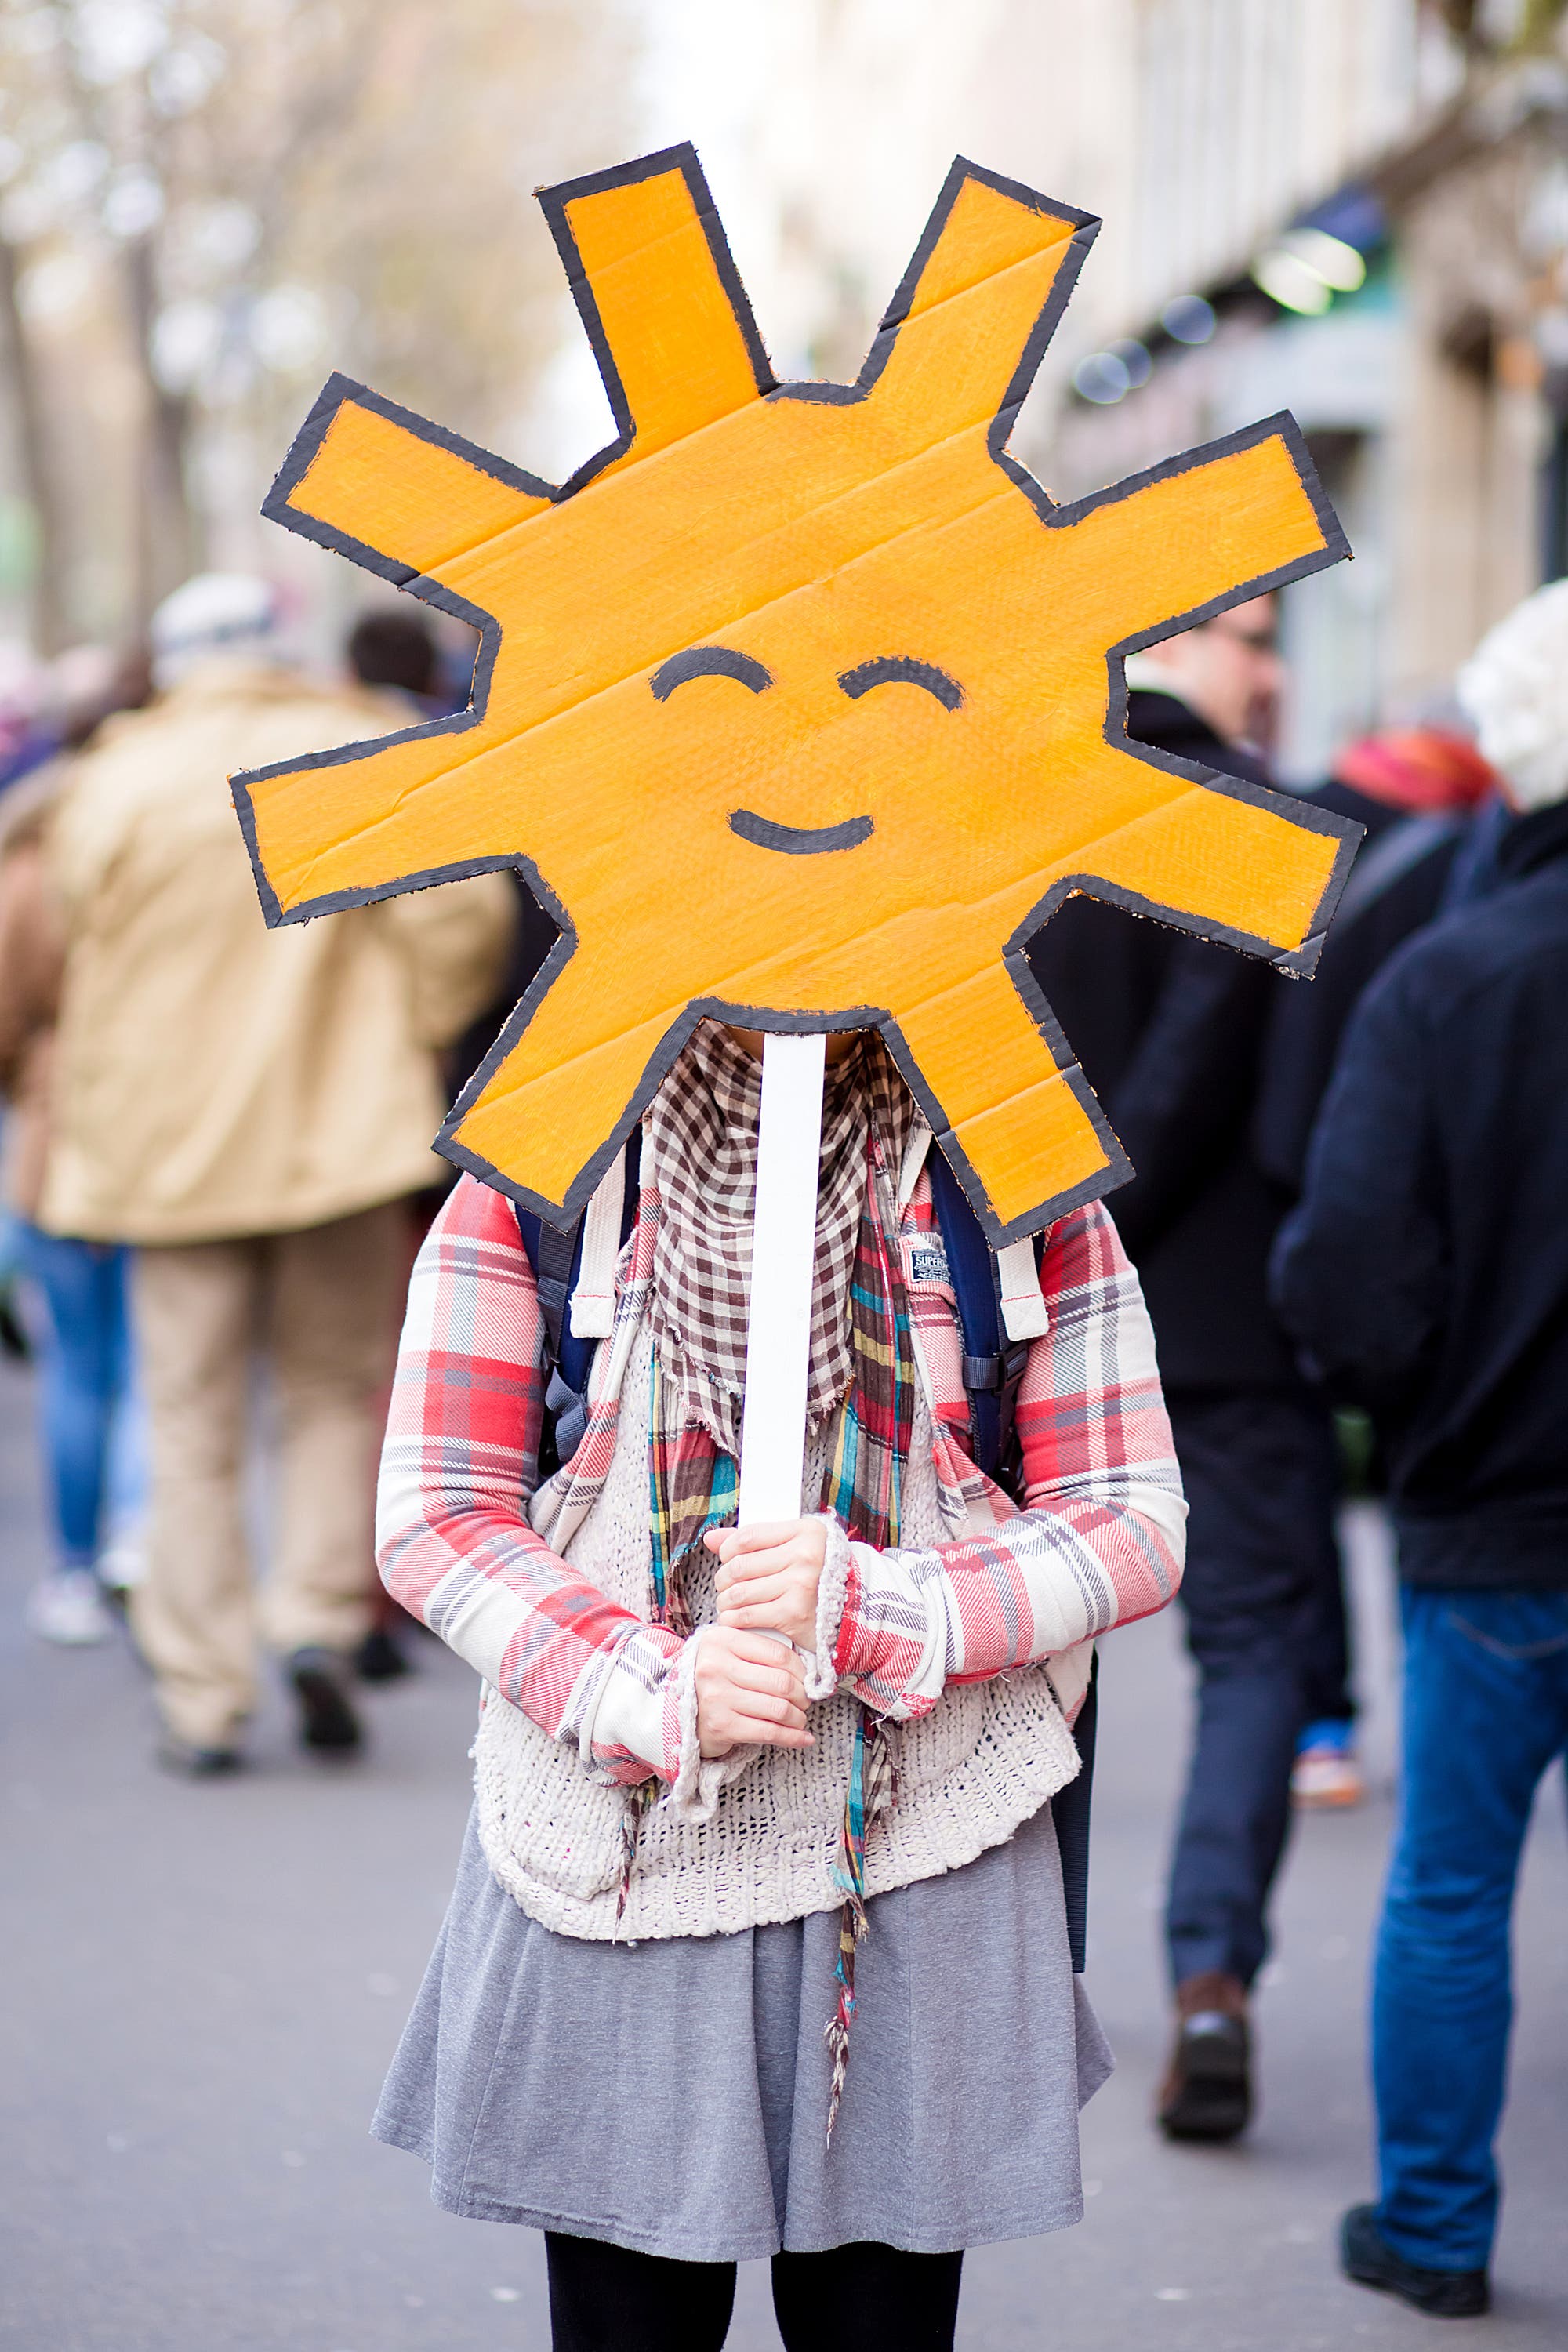 Demonstrantin auf einer Klimaschutz-Demo hält sich eine gelbe Sonne vor's Gesicht